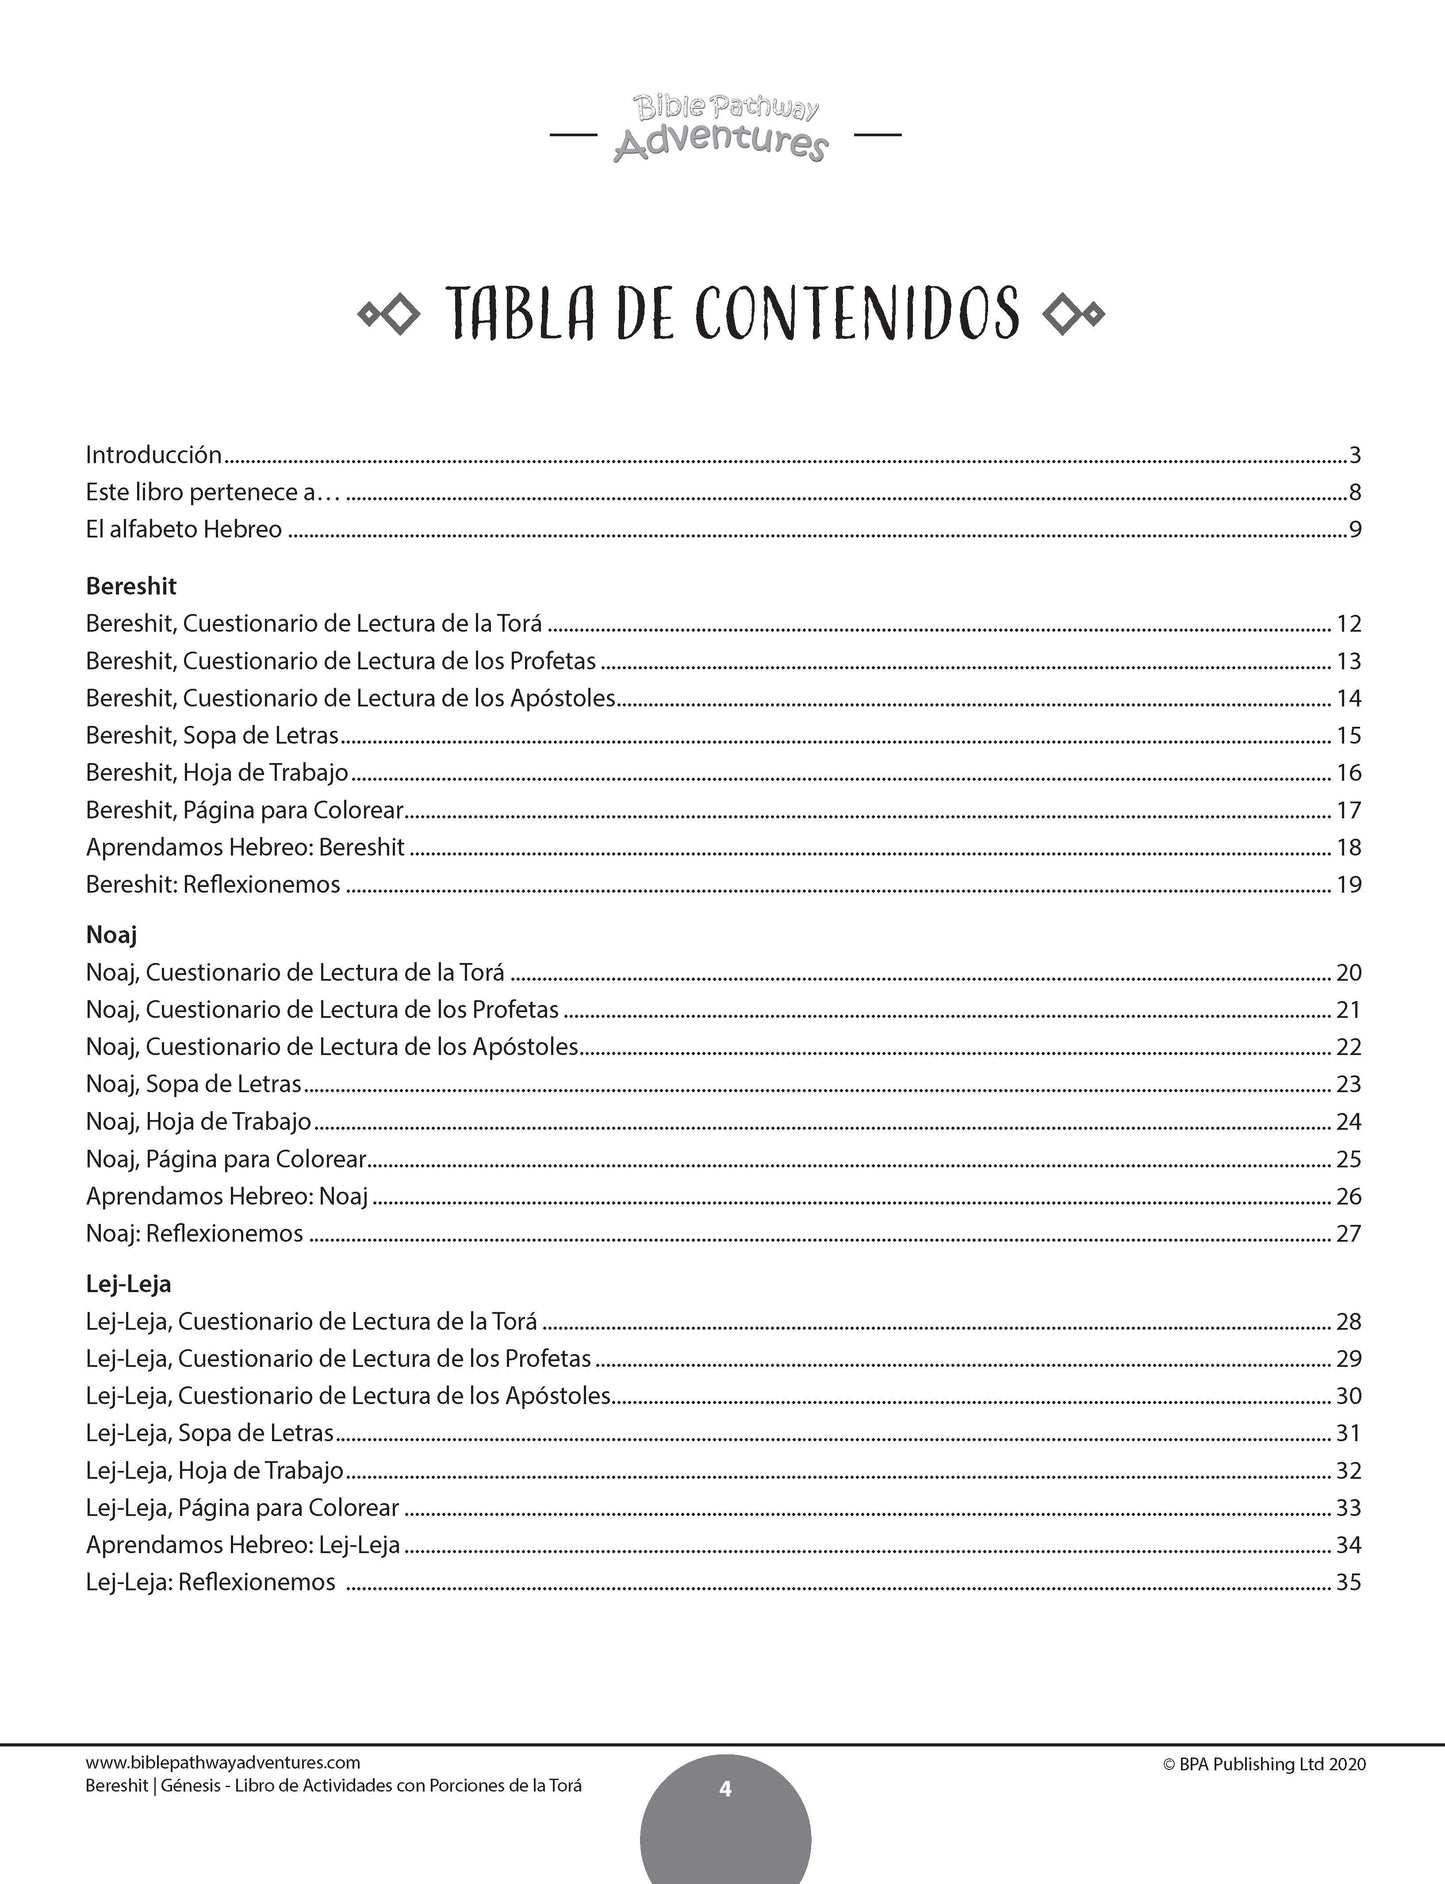 Bereshit / Génesis: Libro de actividades con porciones de la Torá (paperback)